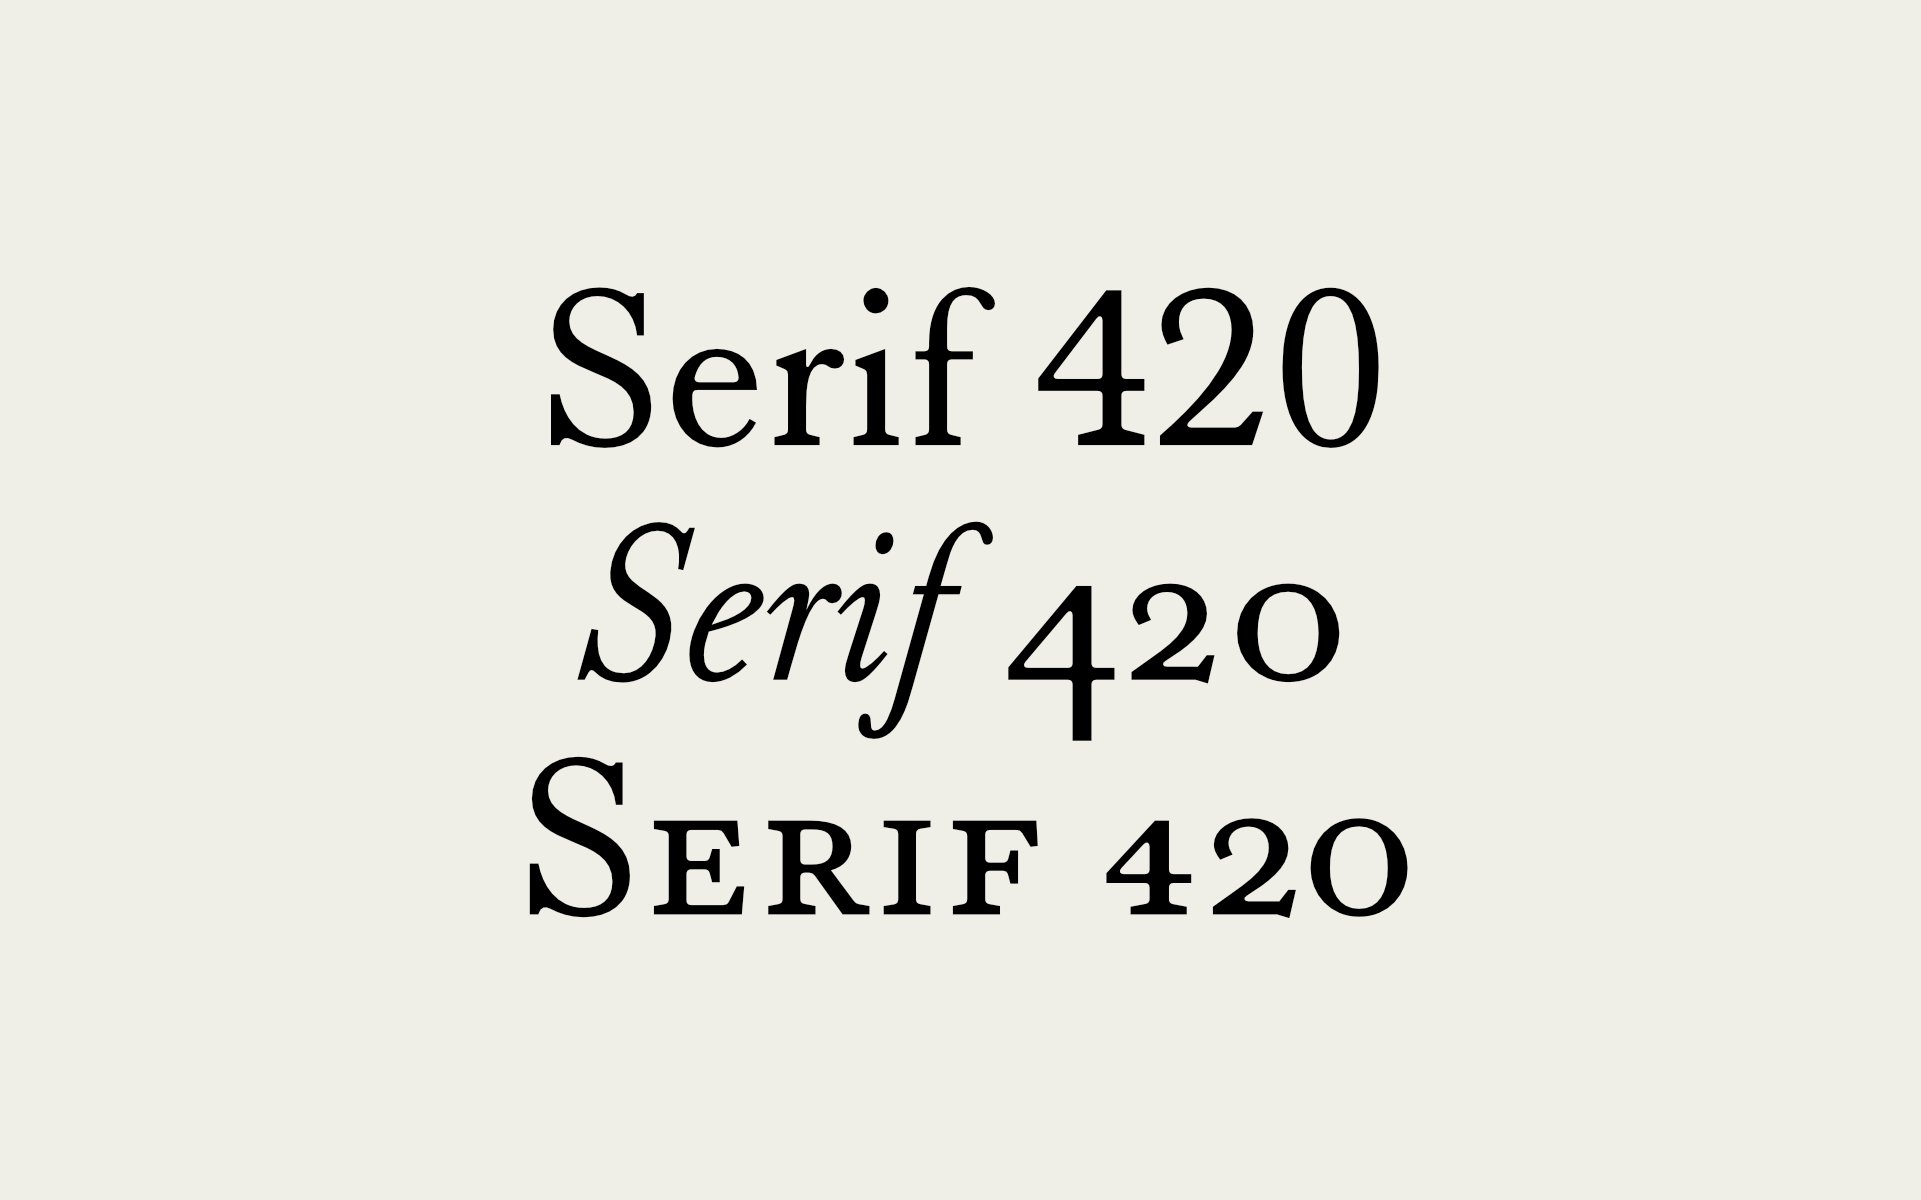 Beispiel einer Serif 420 Italic-Schriftart